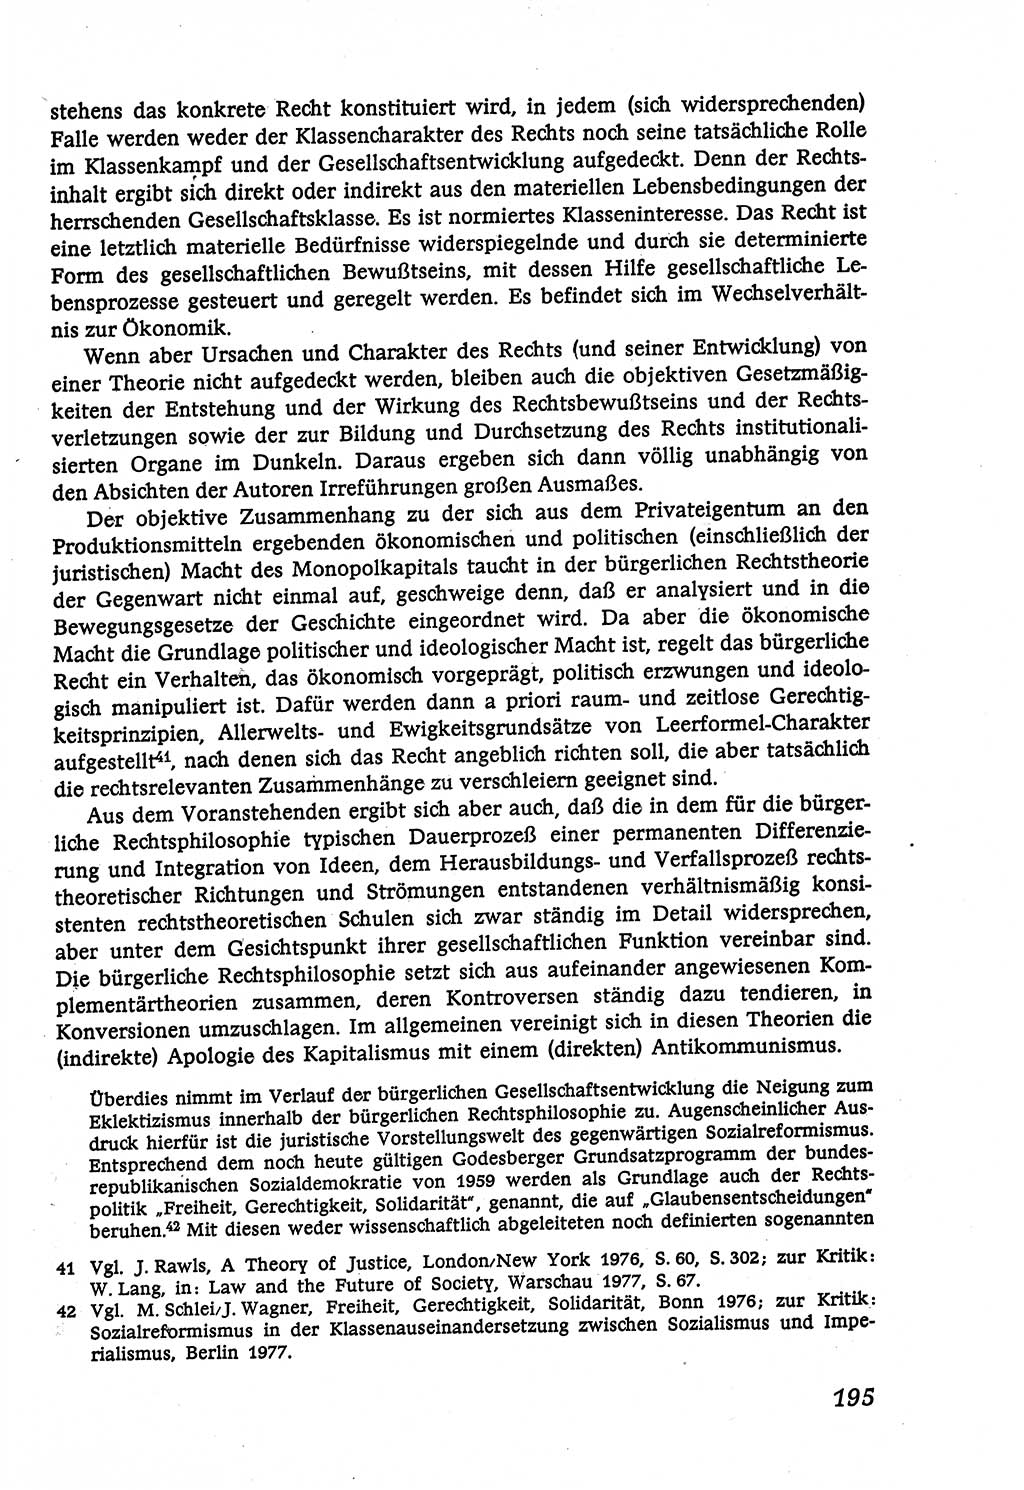 Marxistisch-leninistische (ML) Staats- und Rechtstheorie [Deutsche Demokratische Republik (DDR)], Lehrbuch 1980, Seite 195 (ML St.-R.-Th. DDR Lb. 1980, S. 195)